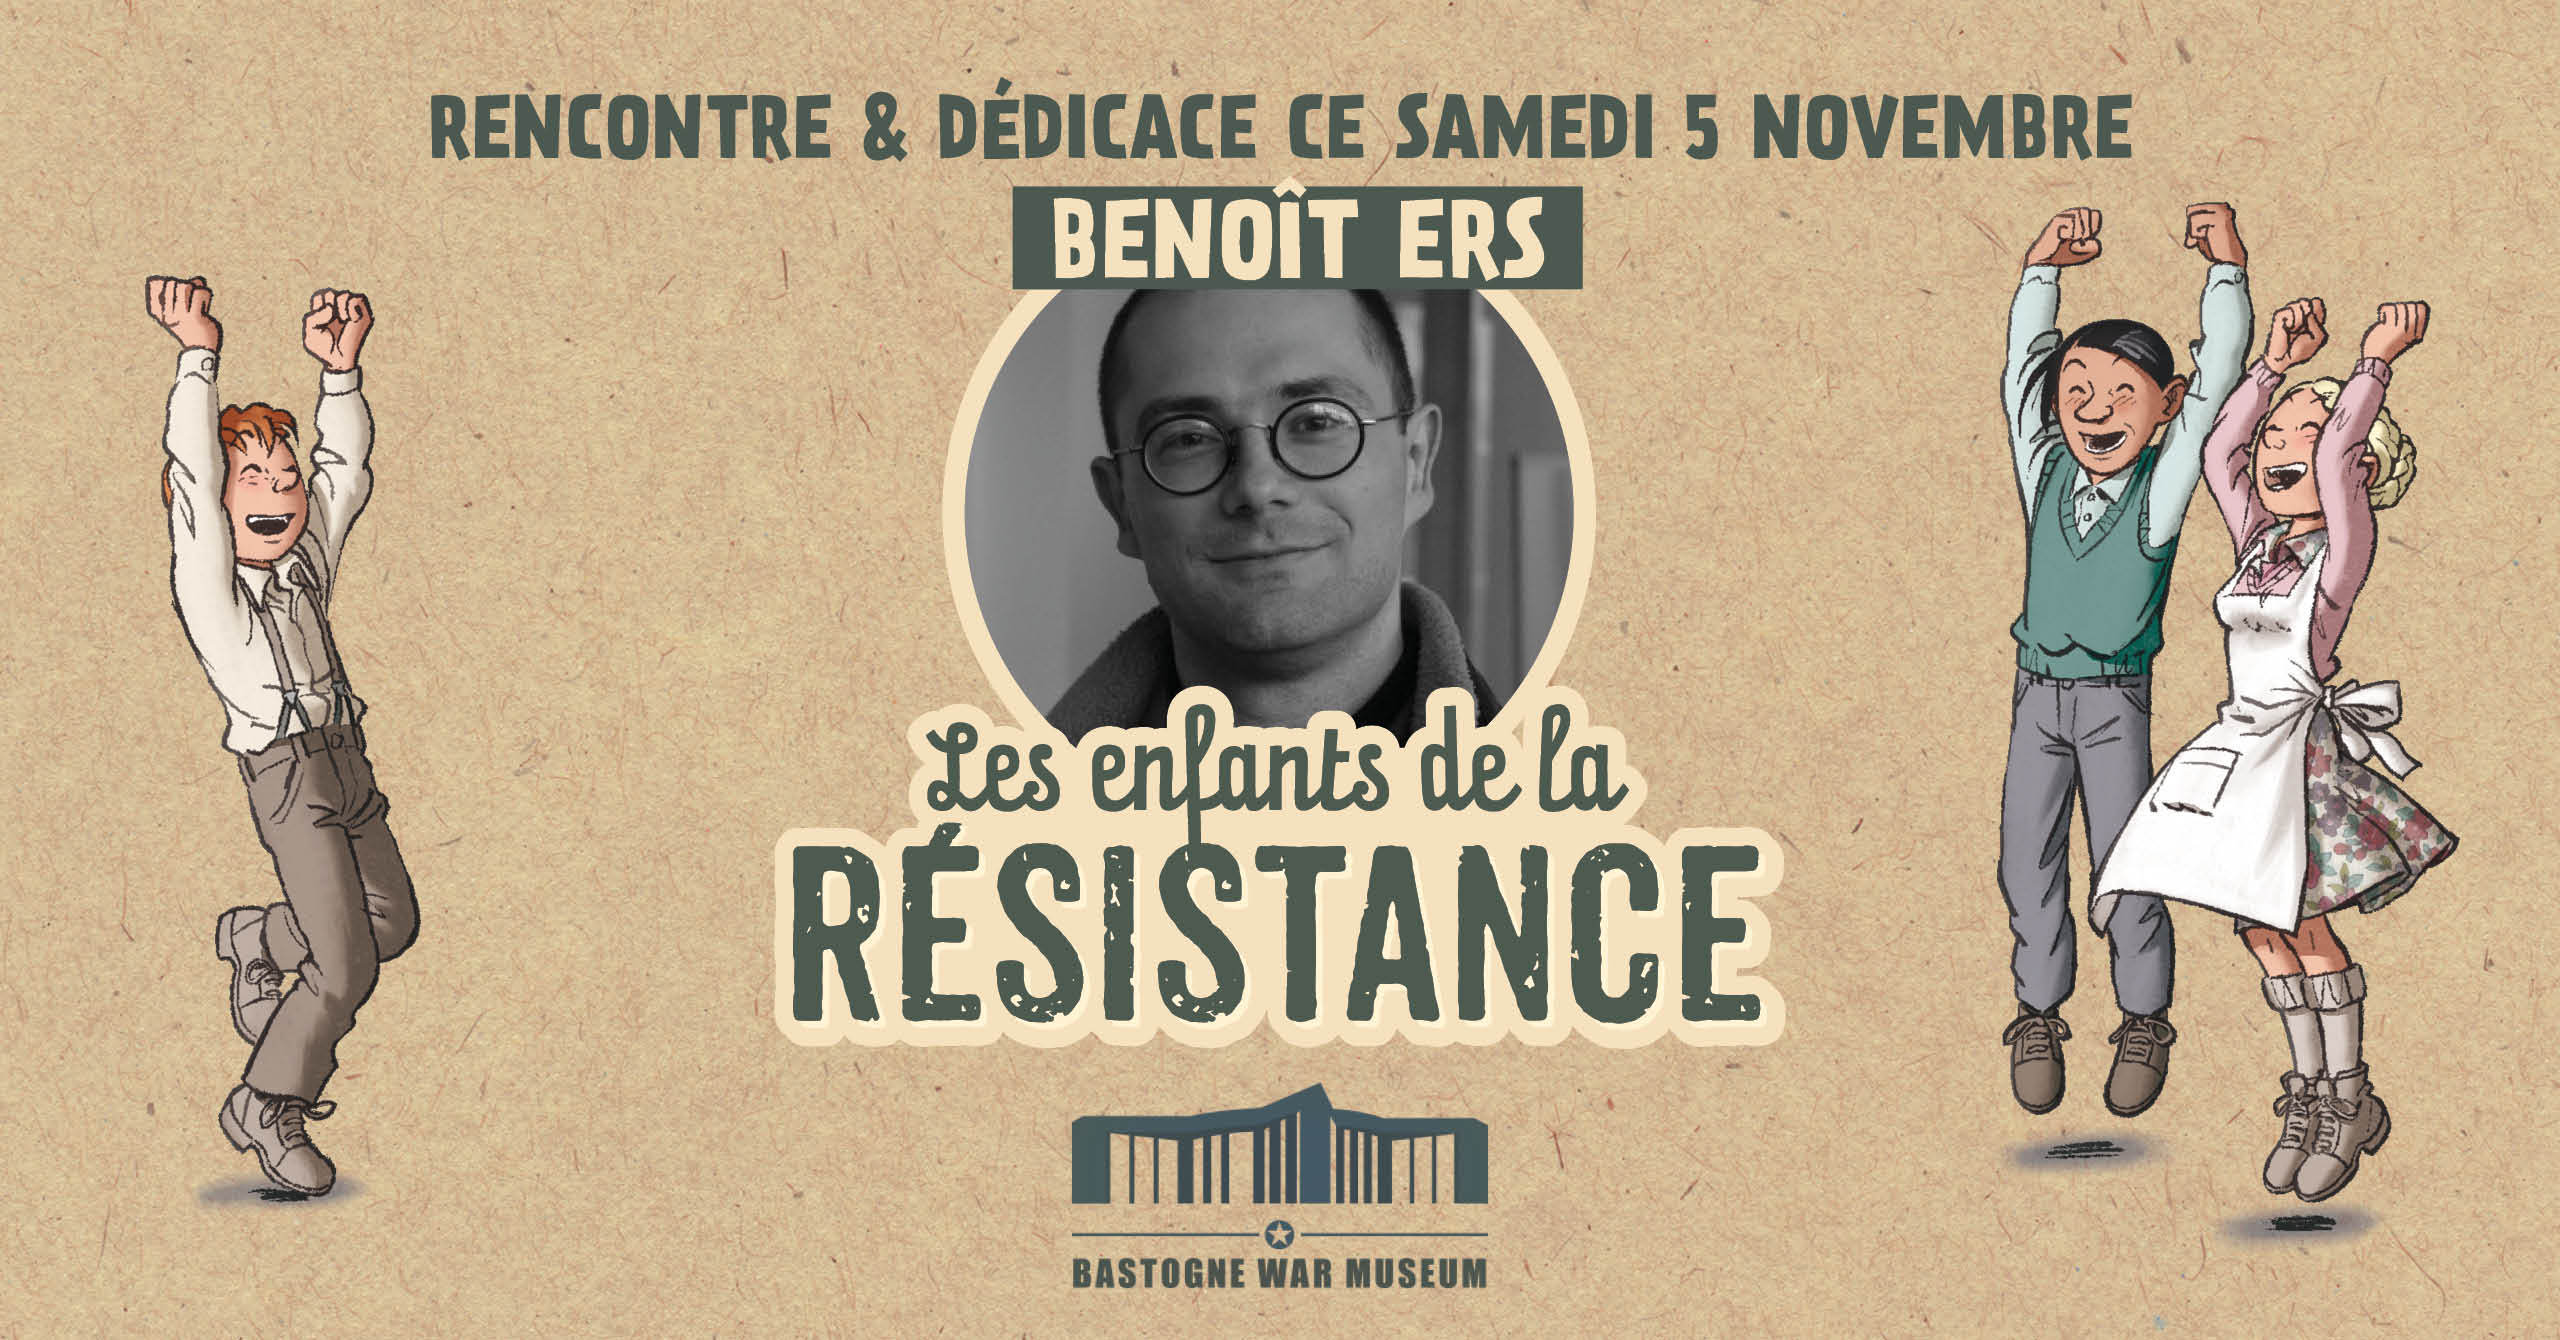 Rencontre & dédicace : Benoît Ers au Bastogne War Museum le 5/11